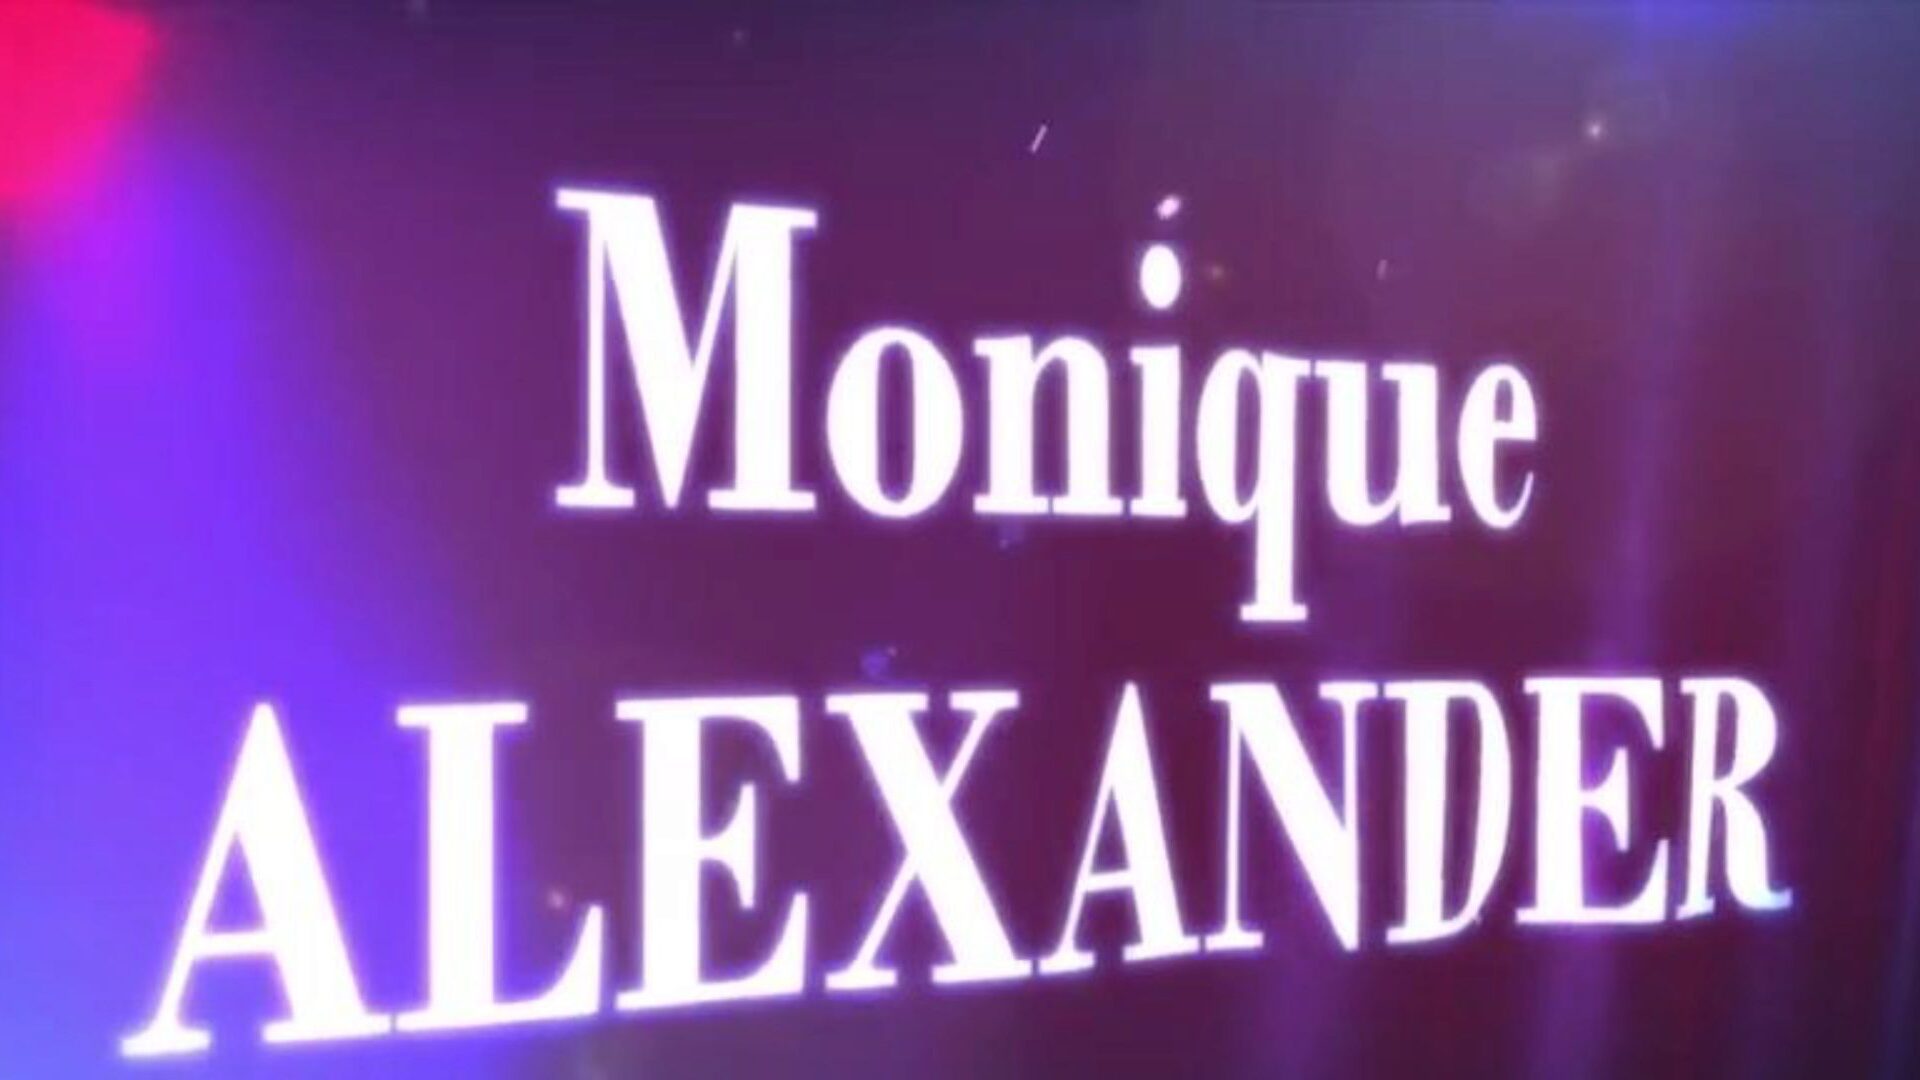 brazzers - skutečné příběhy manželek - co ji bere tak zdlouhavou sekvenci s monique alexander a xander v hlavní roli